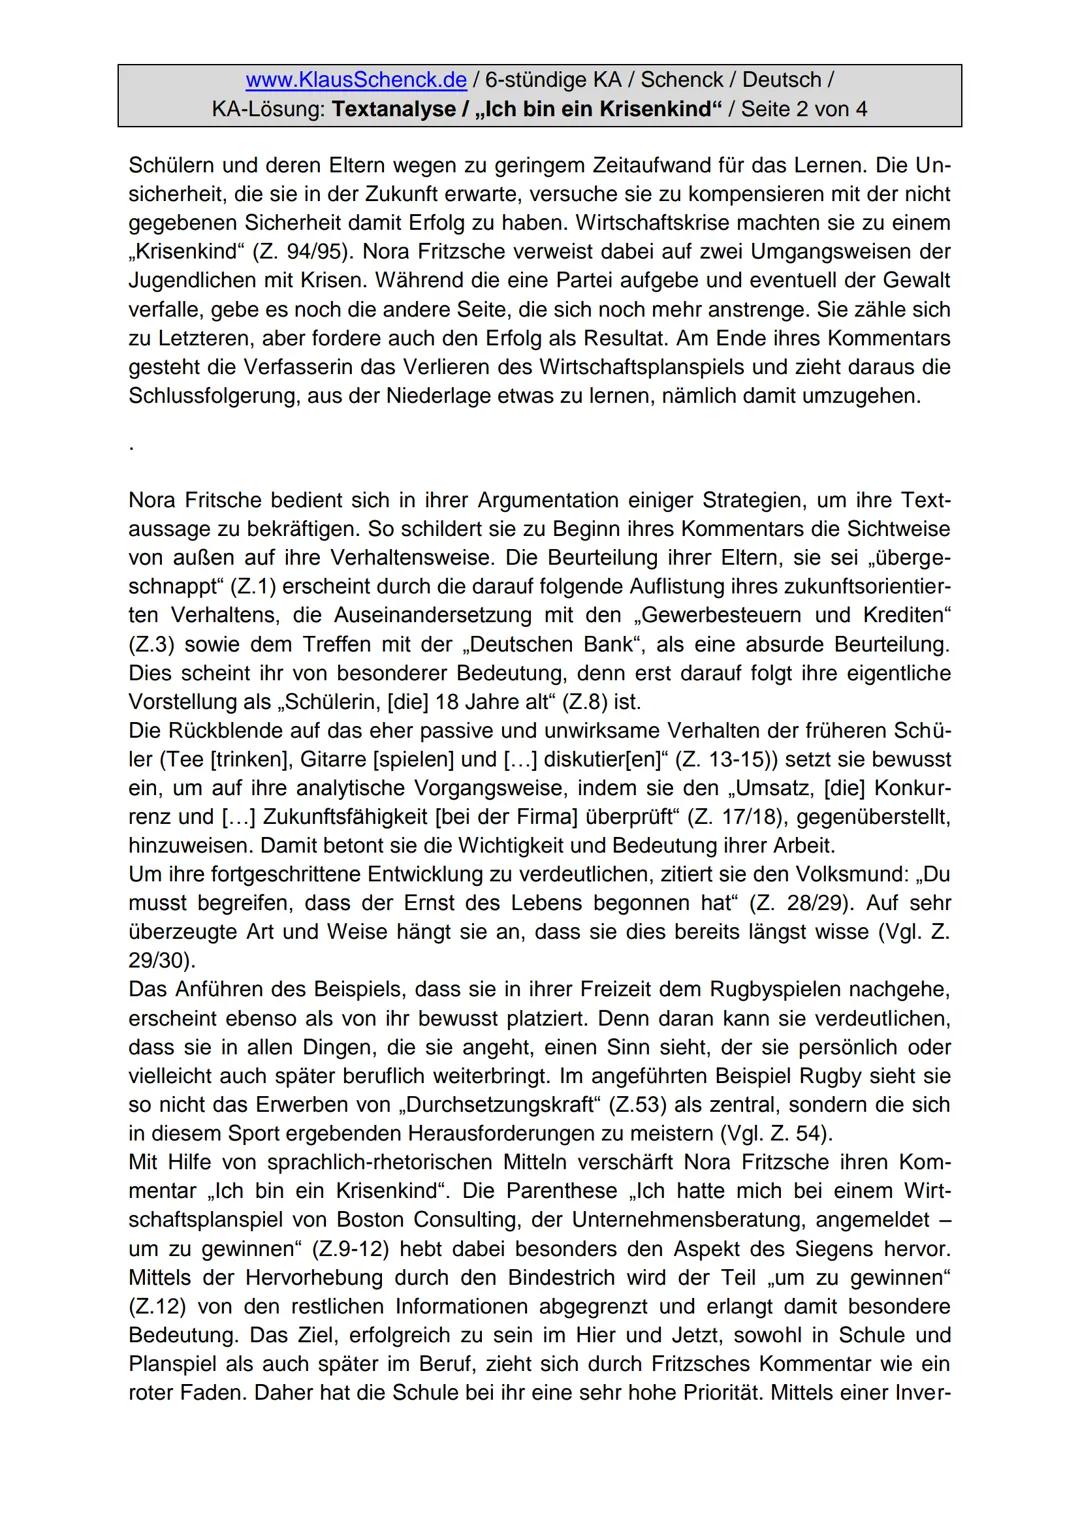 www.KlausSchenck.de/ 6-stündige KA / Schenck / Deutsch /
KA-Lösung: Textanalyse / ,,Ich bin ein Krisenkind" / Seite 1 von 4
Aufgabenstellung